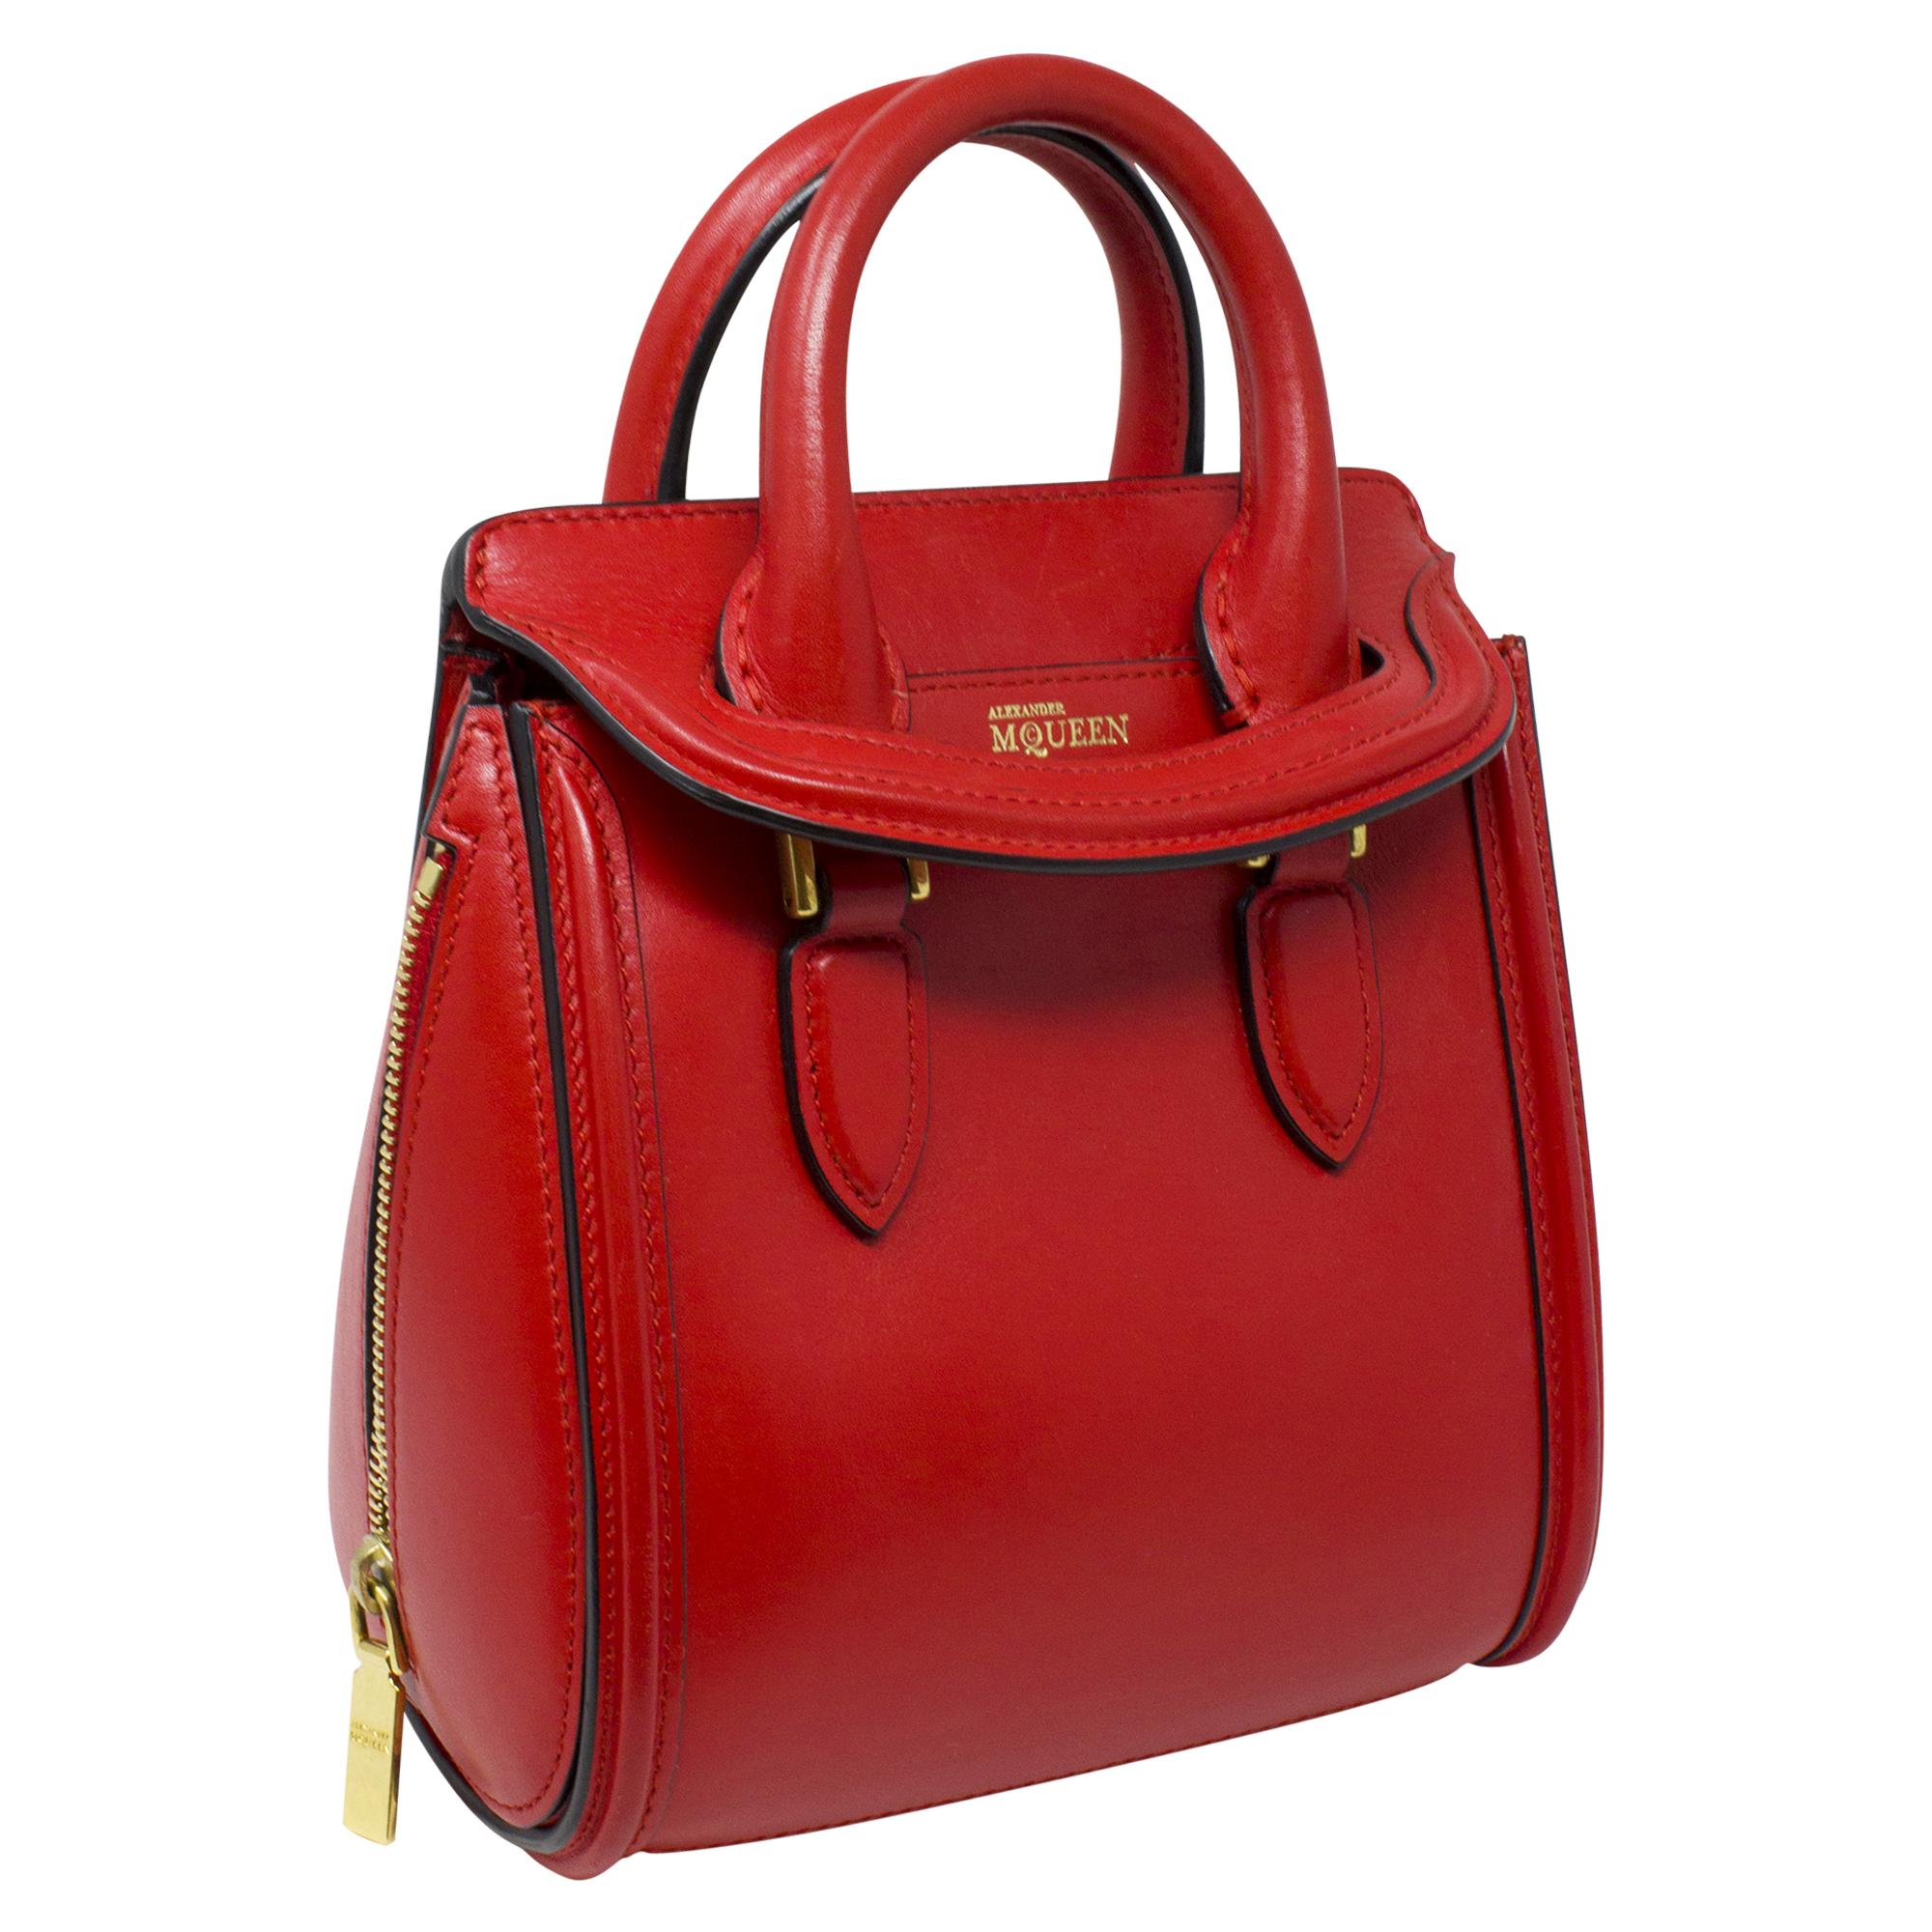 Le sac à main rouge Alexander McQueen est un accessoire audacieux et frappant pour les personnes à la pointe de la mode. Confectionné en cuir de veau rouge vif, ce sac est un gage d'assurance et de style. Avec son design épuré et ses accessoires